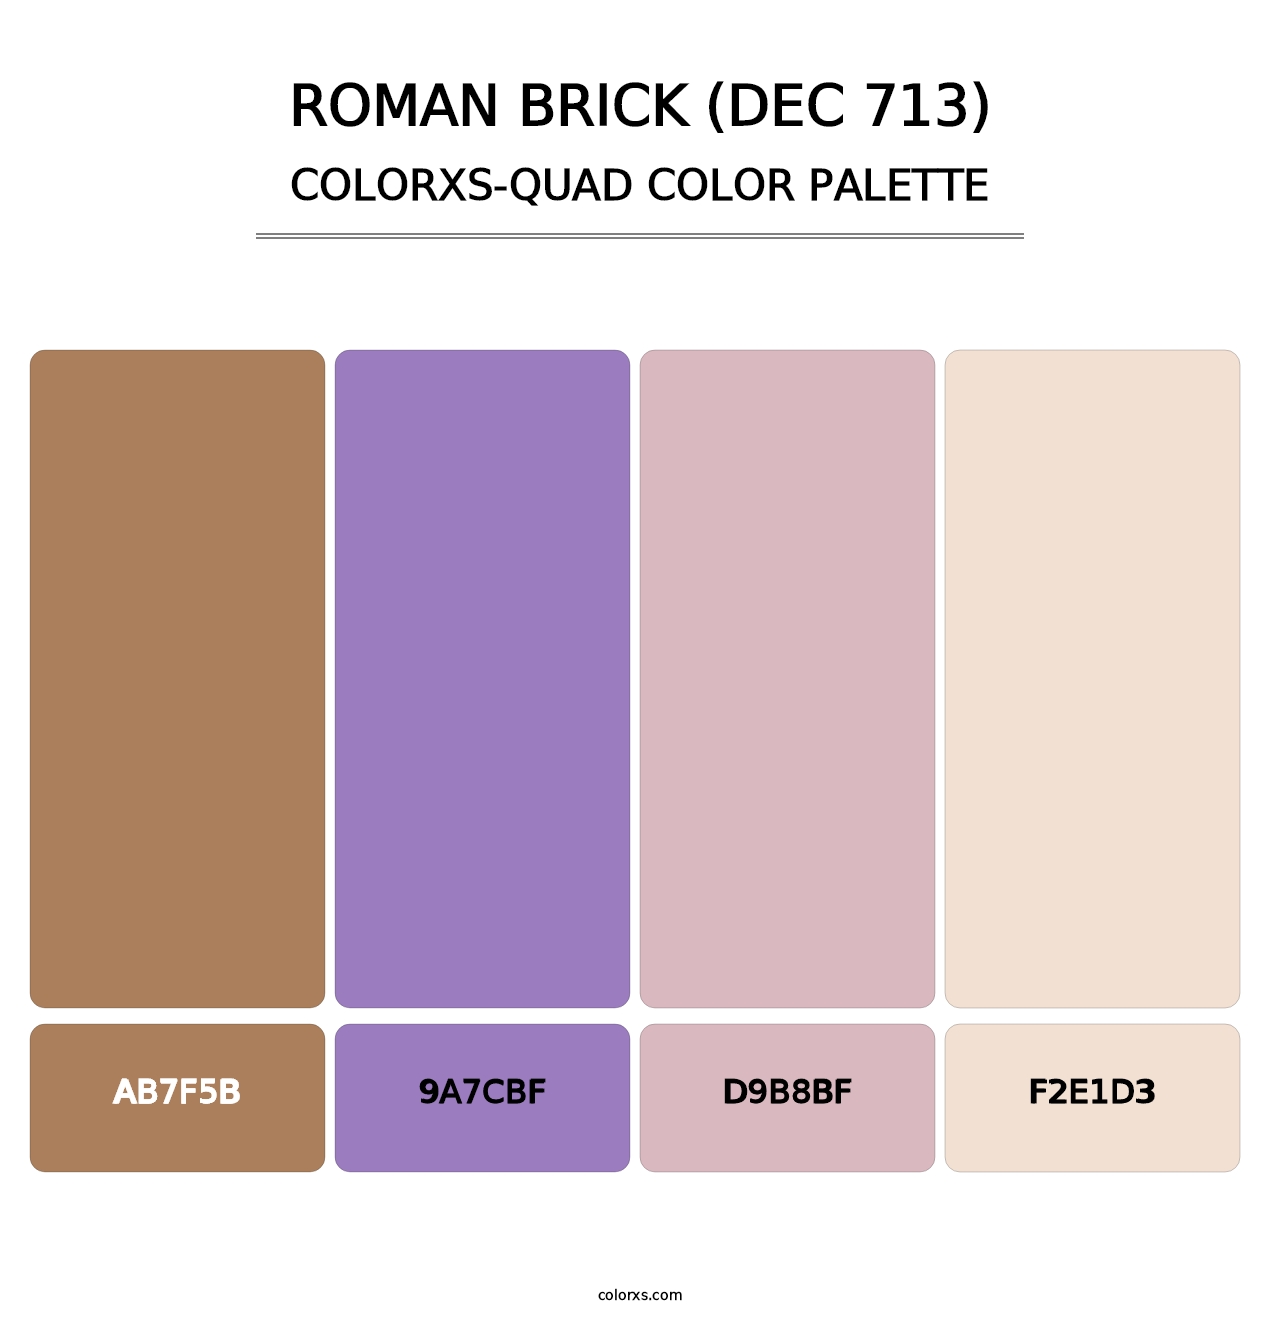 Roman Brick (DEC 713) - Colorxs Quad Palette